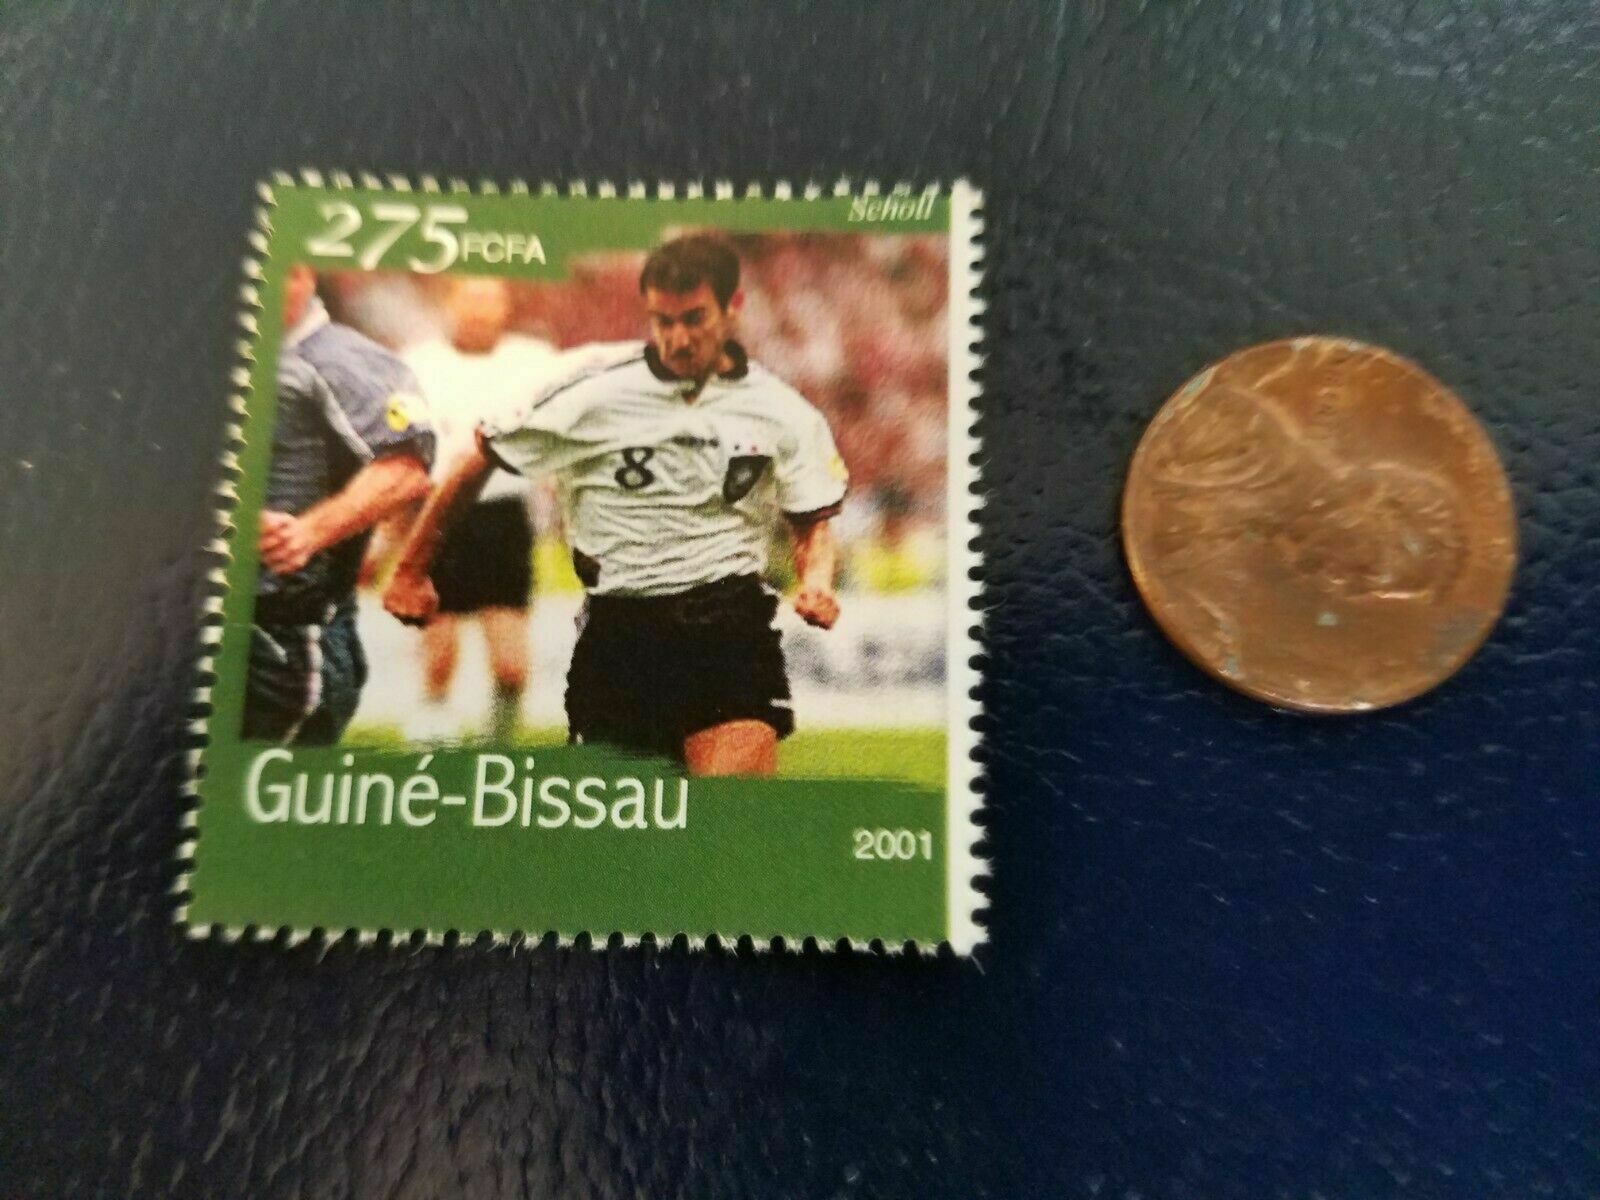 Mehmet Scholl Germany German Soccer 2001 Guine-Bissau Perforated Stamp